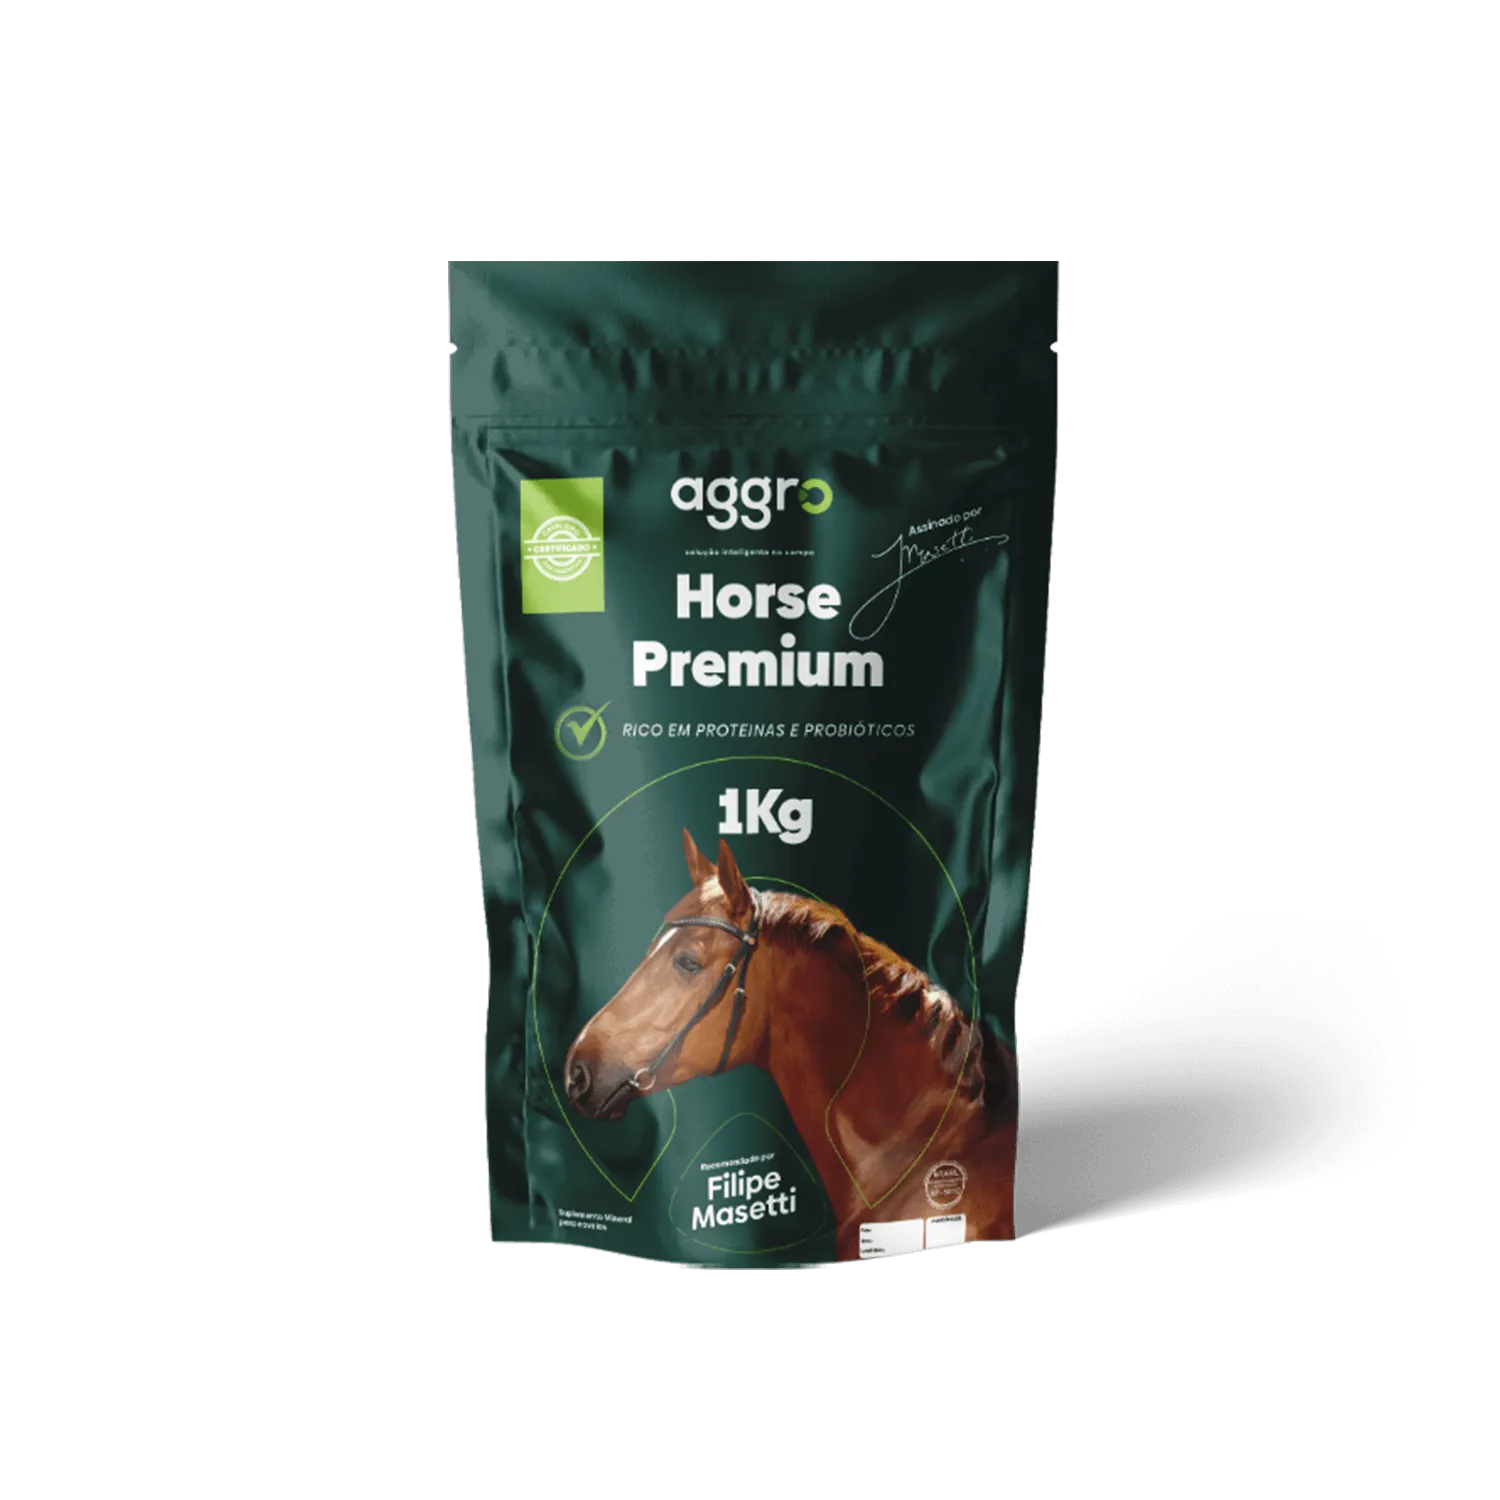 Aggro Horse Premium – 1kg